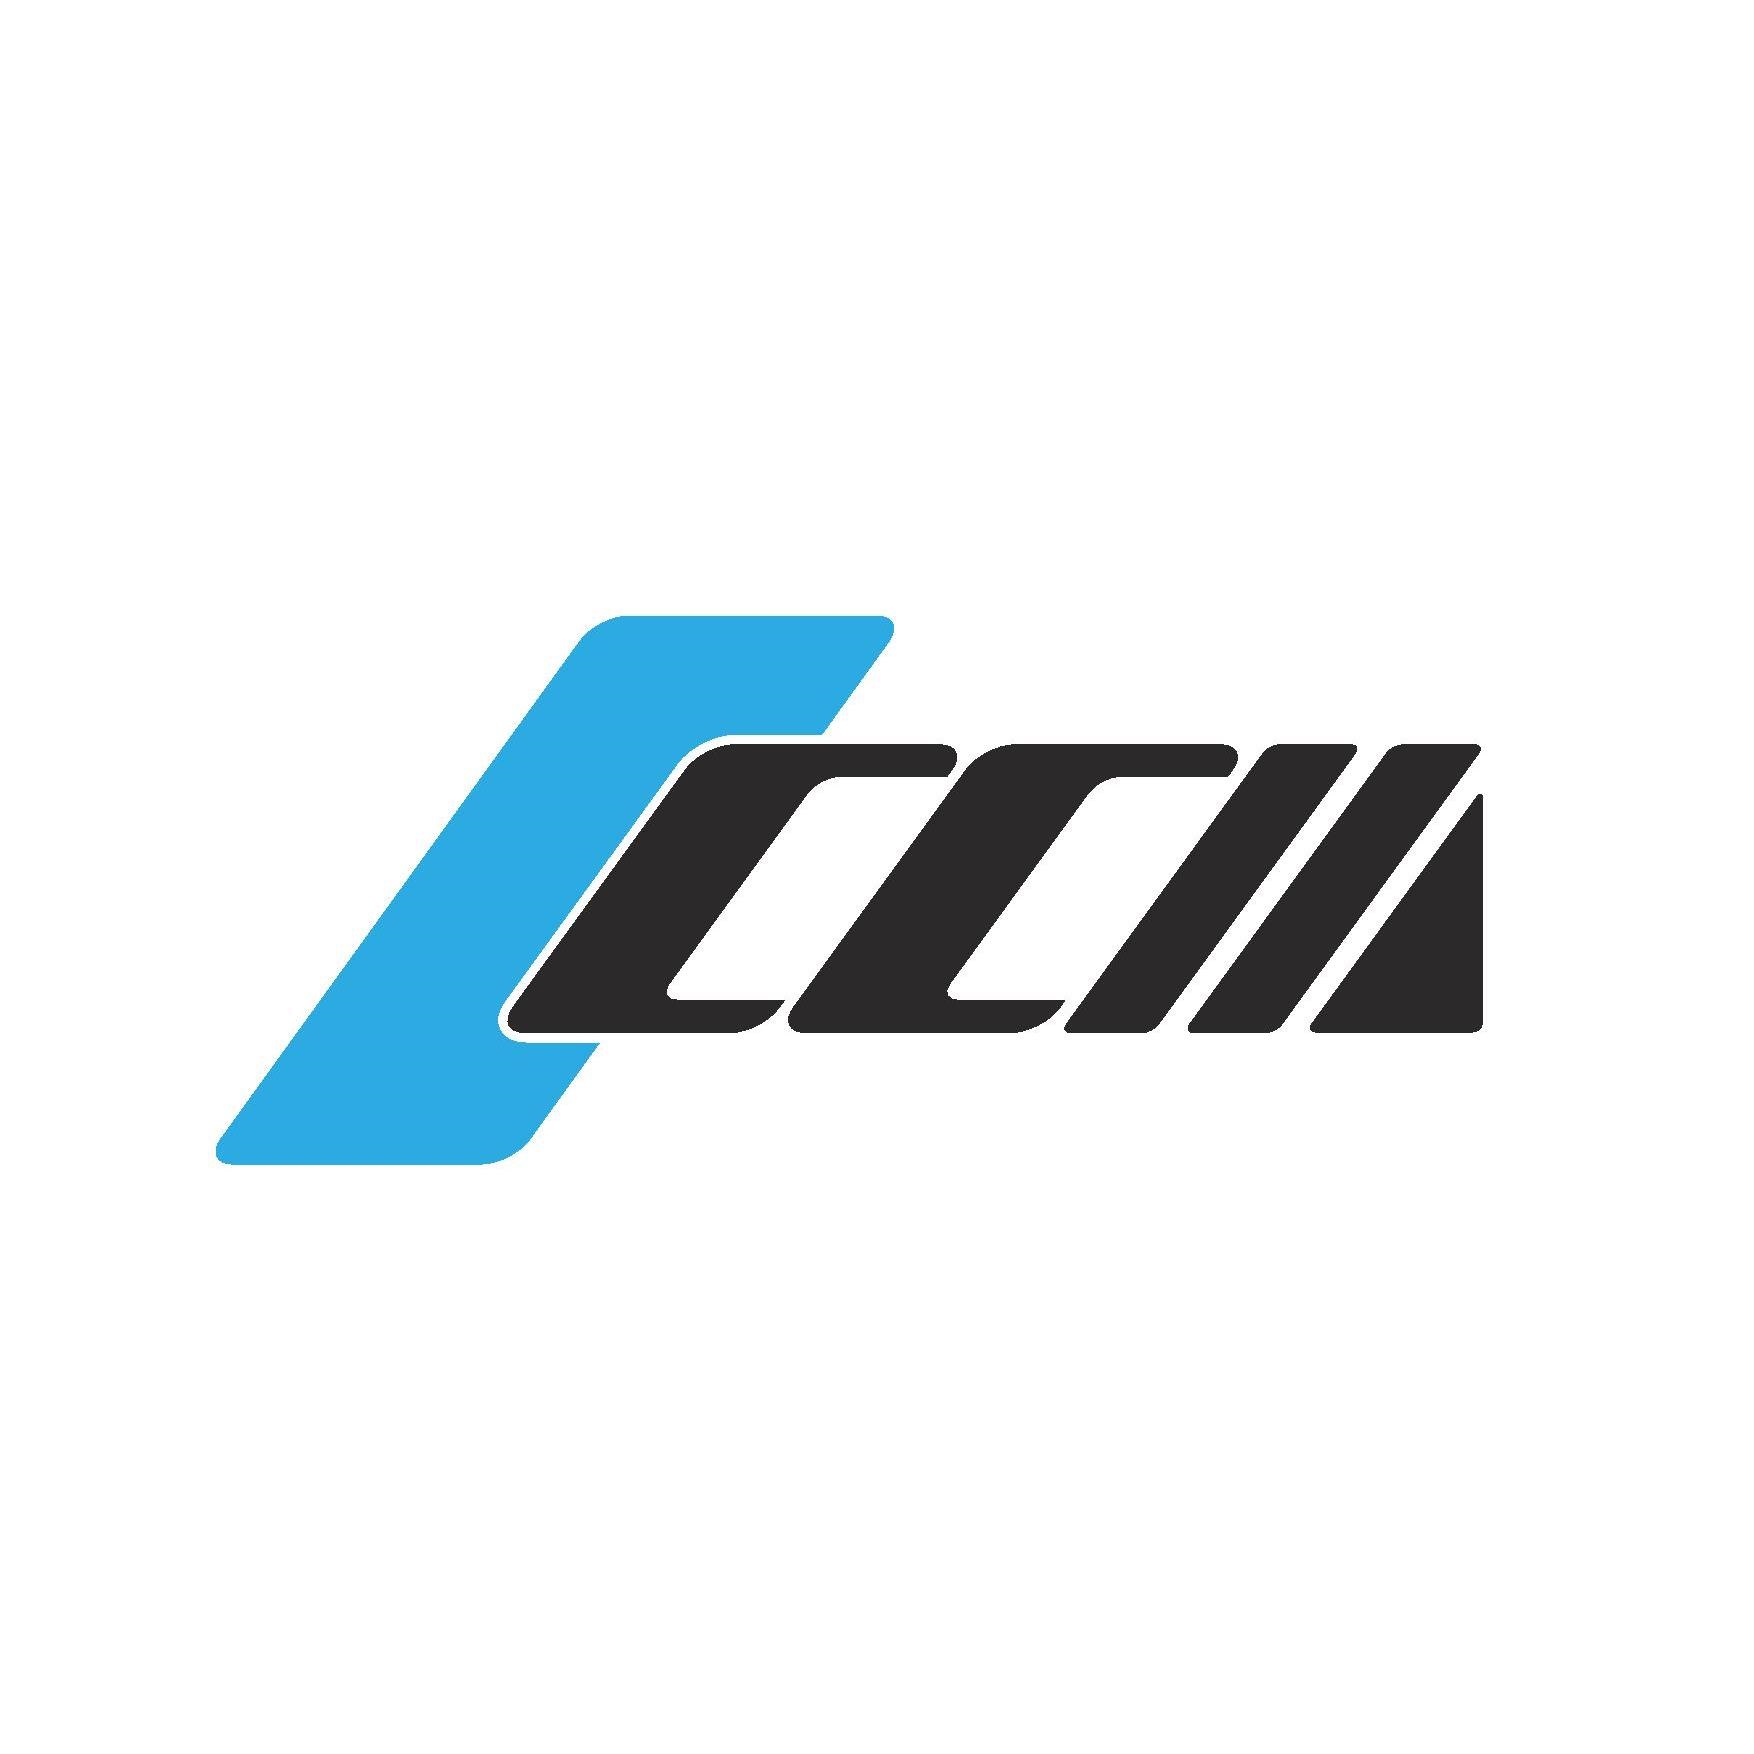 CHING CHAN OPTICAL TECHNOLOGY CO., LTD. (精湛光學科技股份有限公司) logo